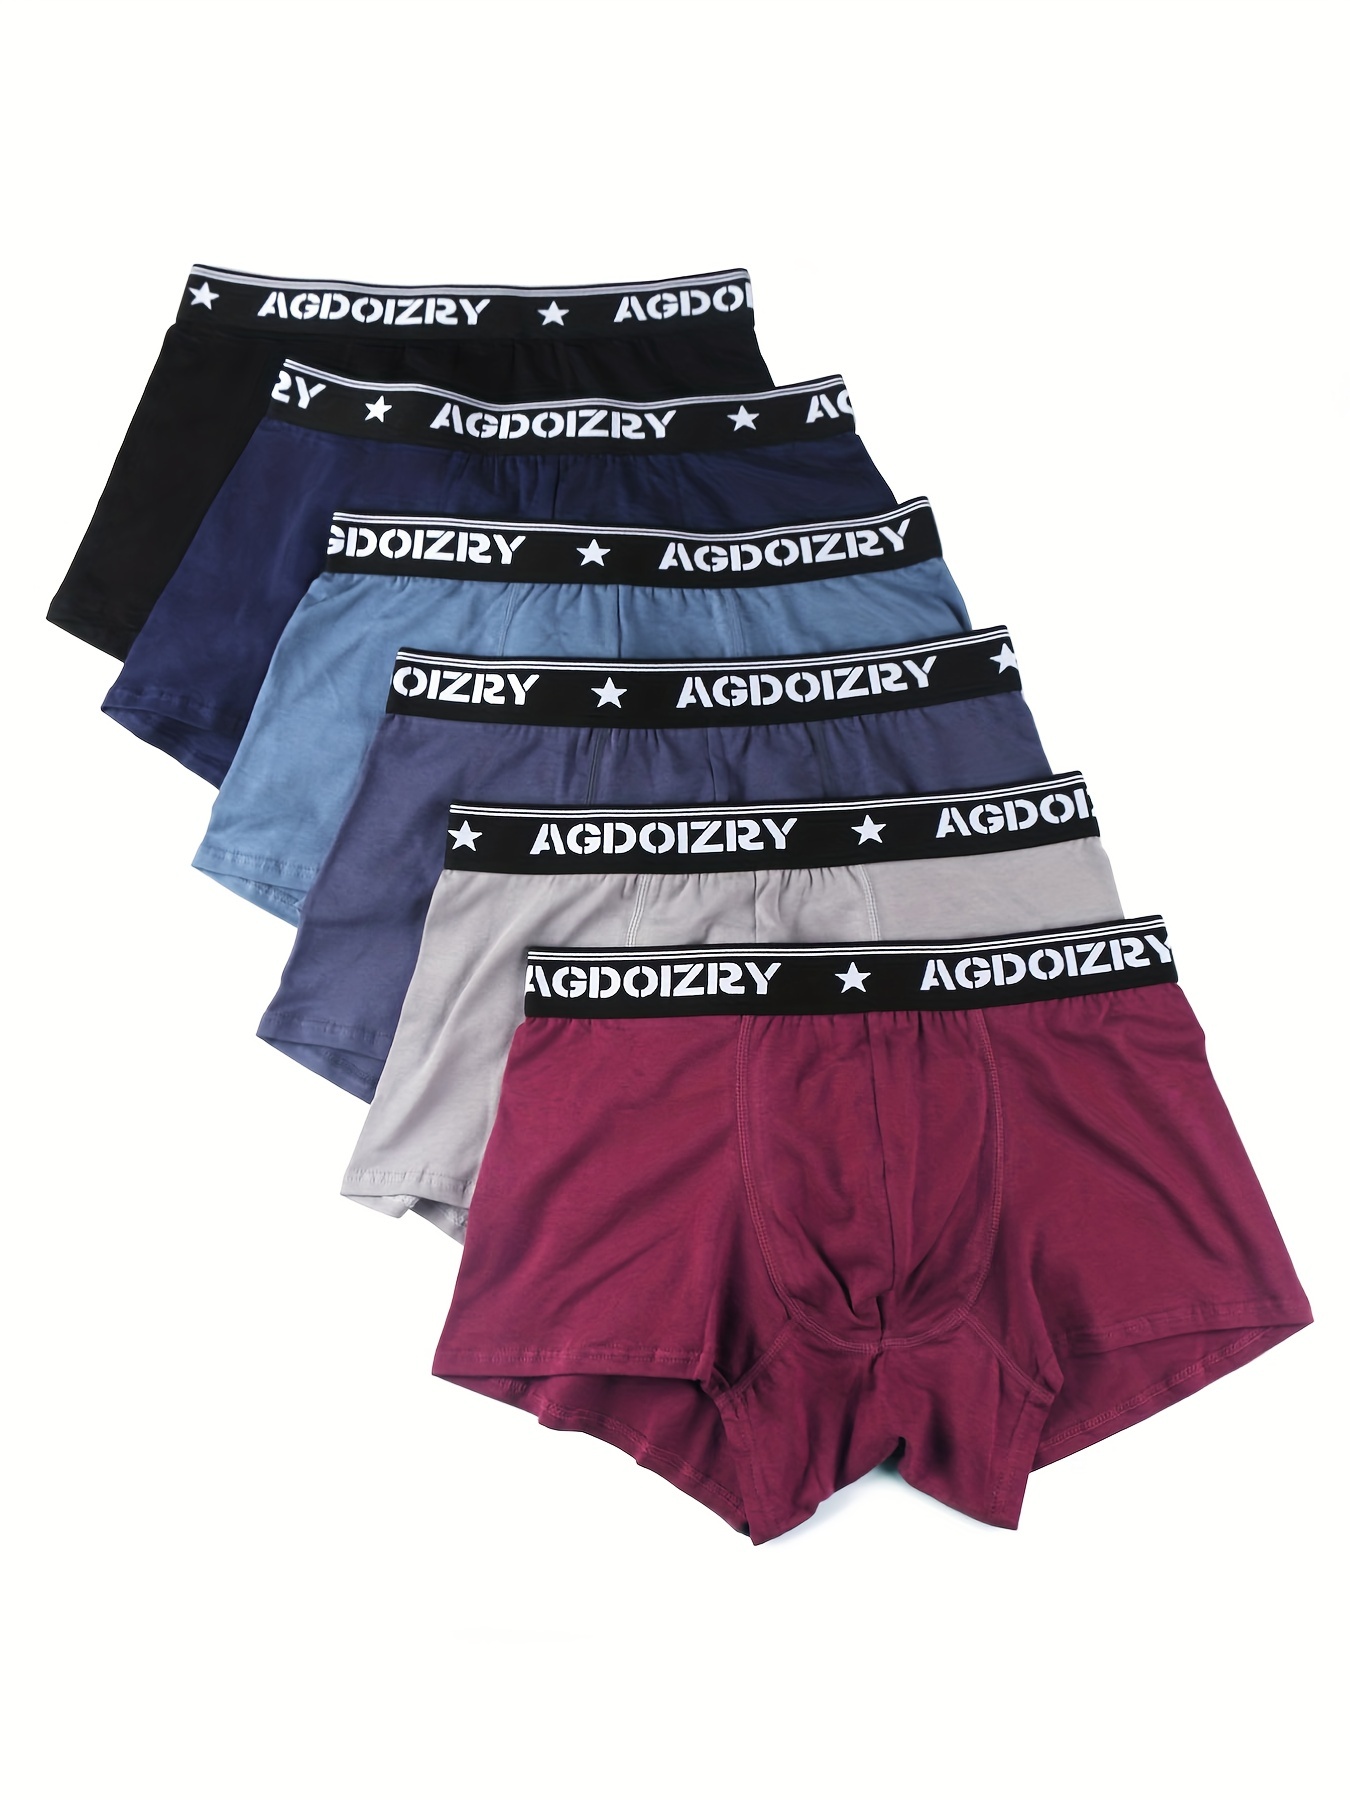 6pcs Men's Cotton Soft Comfortable Breathable Boxer Briefs, Men's Medium  Stretch Underwear, Multicolor Set